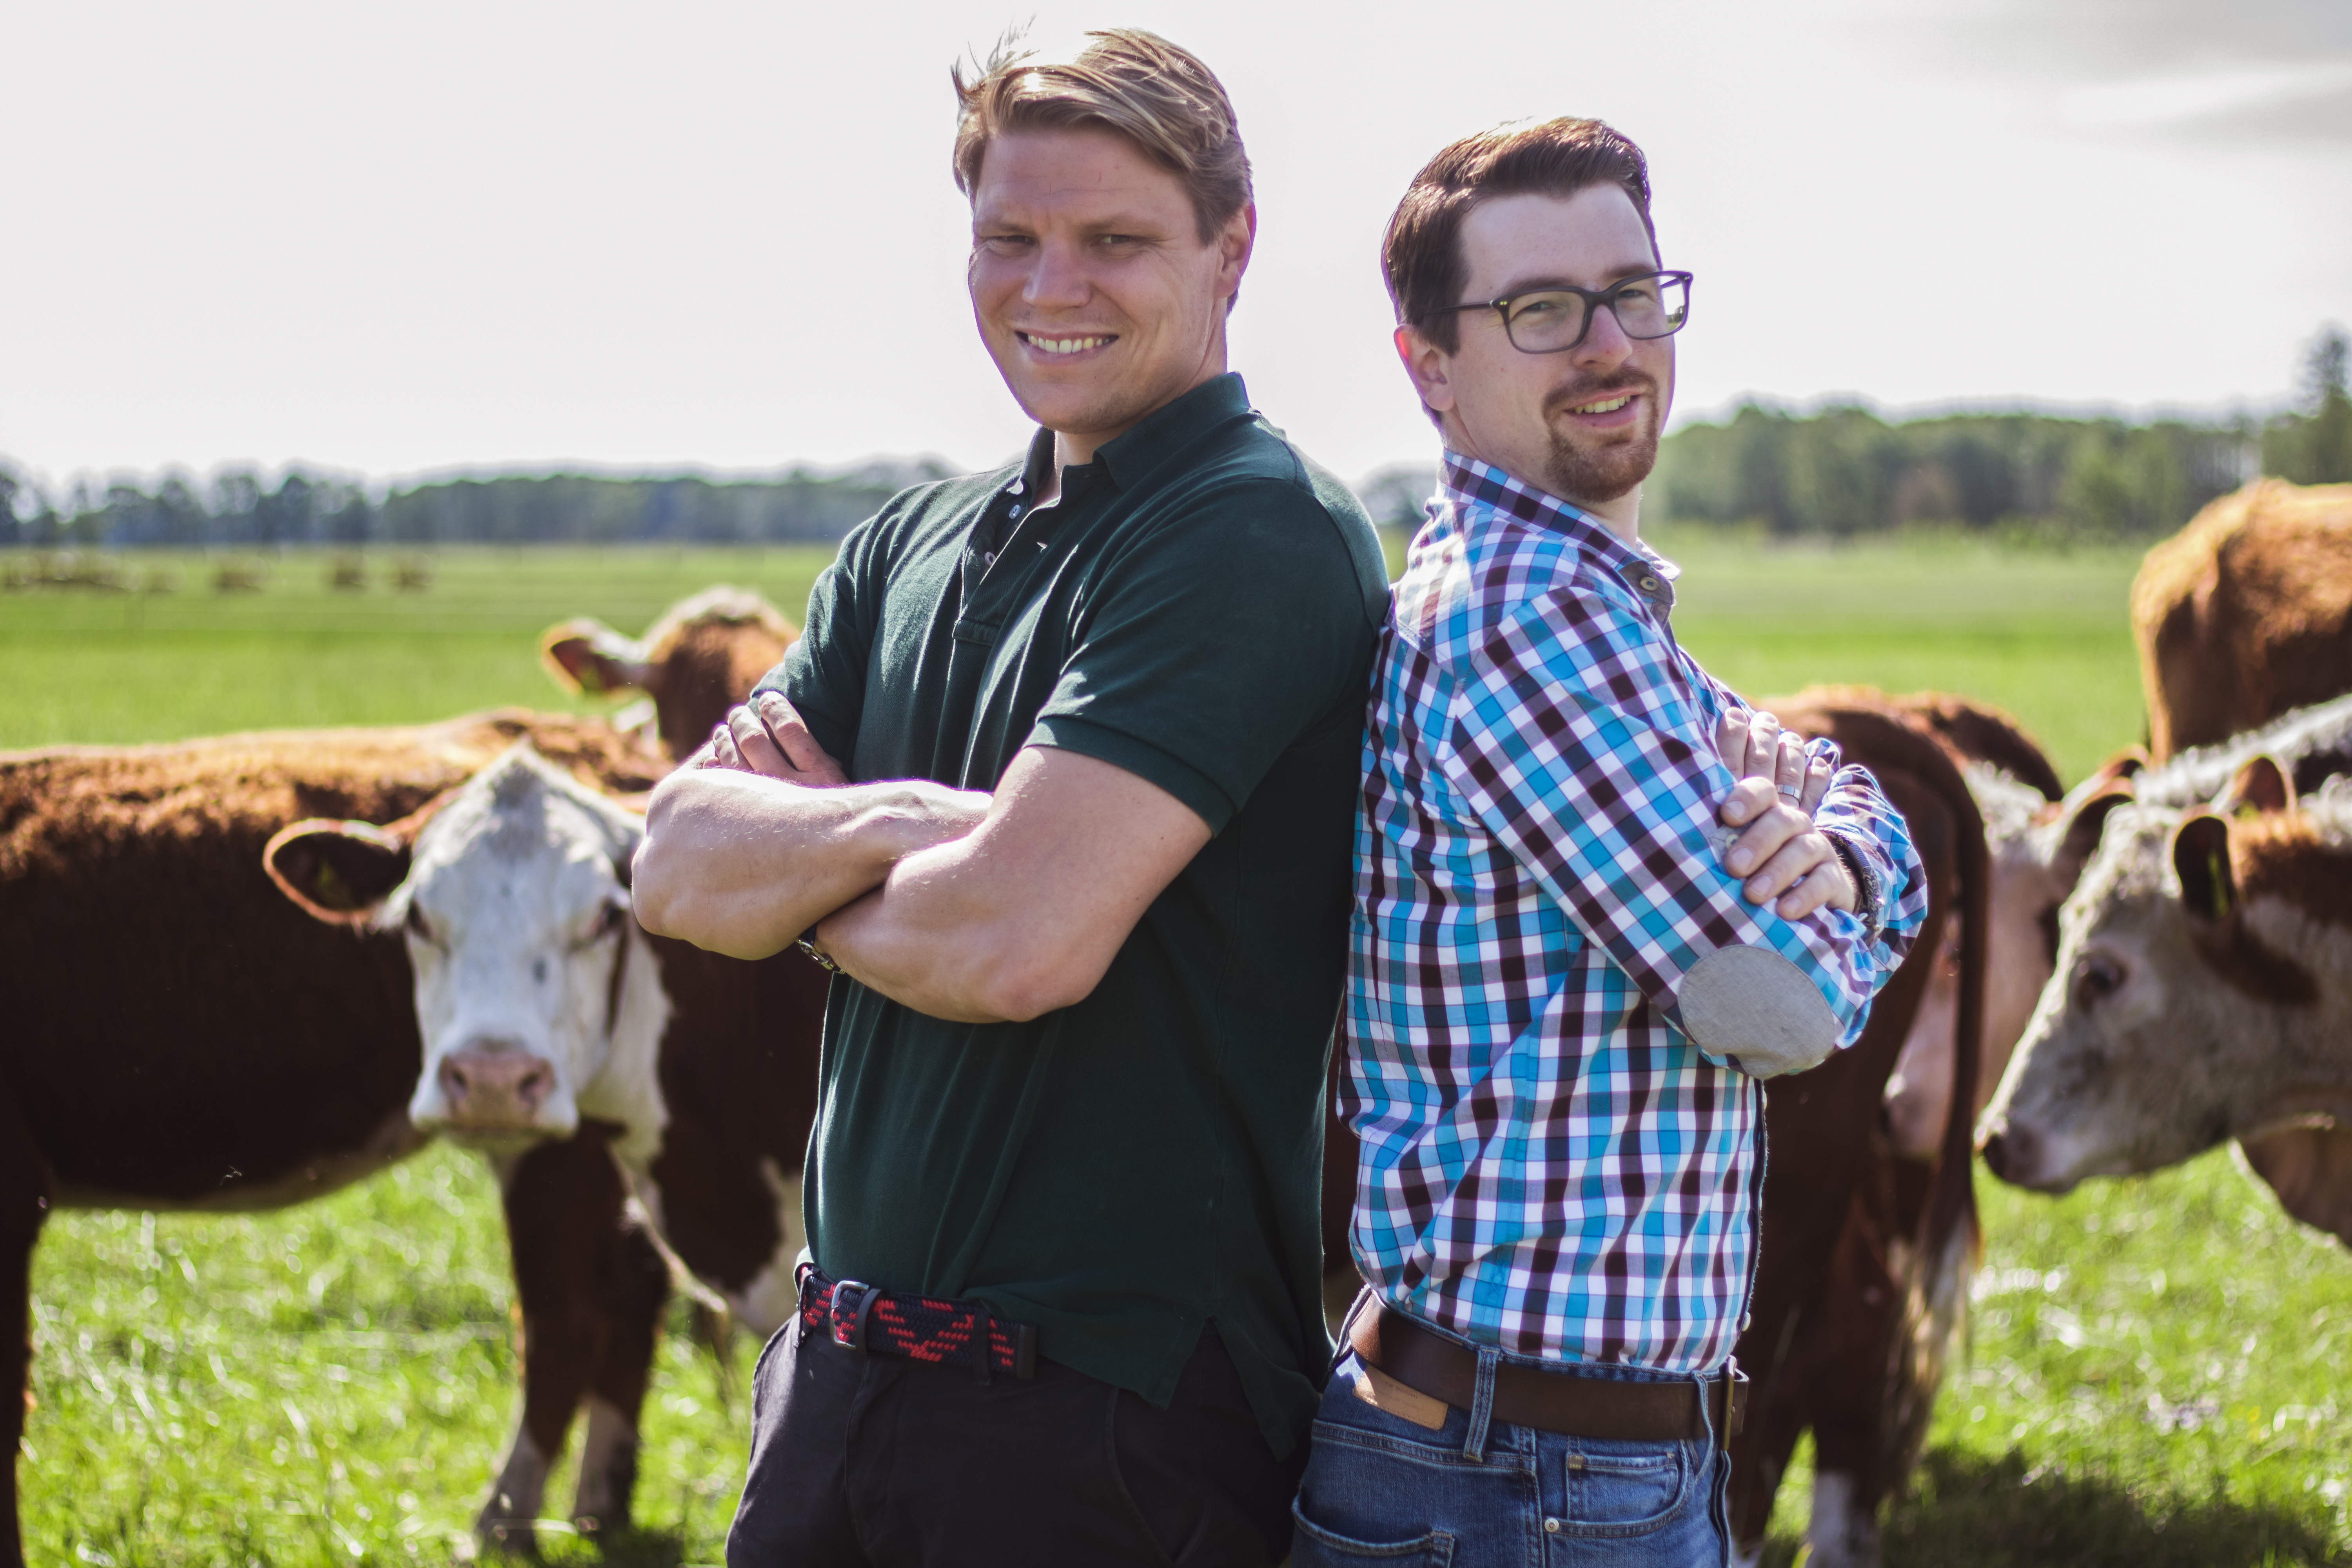 Lorenz Jandke und Jan Heilmann stehen Rücken an Rücken mit den Armen verschränkt vor einer Rinderherde und lächeln in die Kamera.